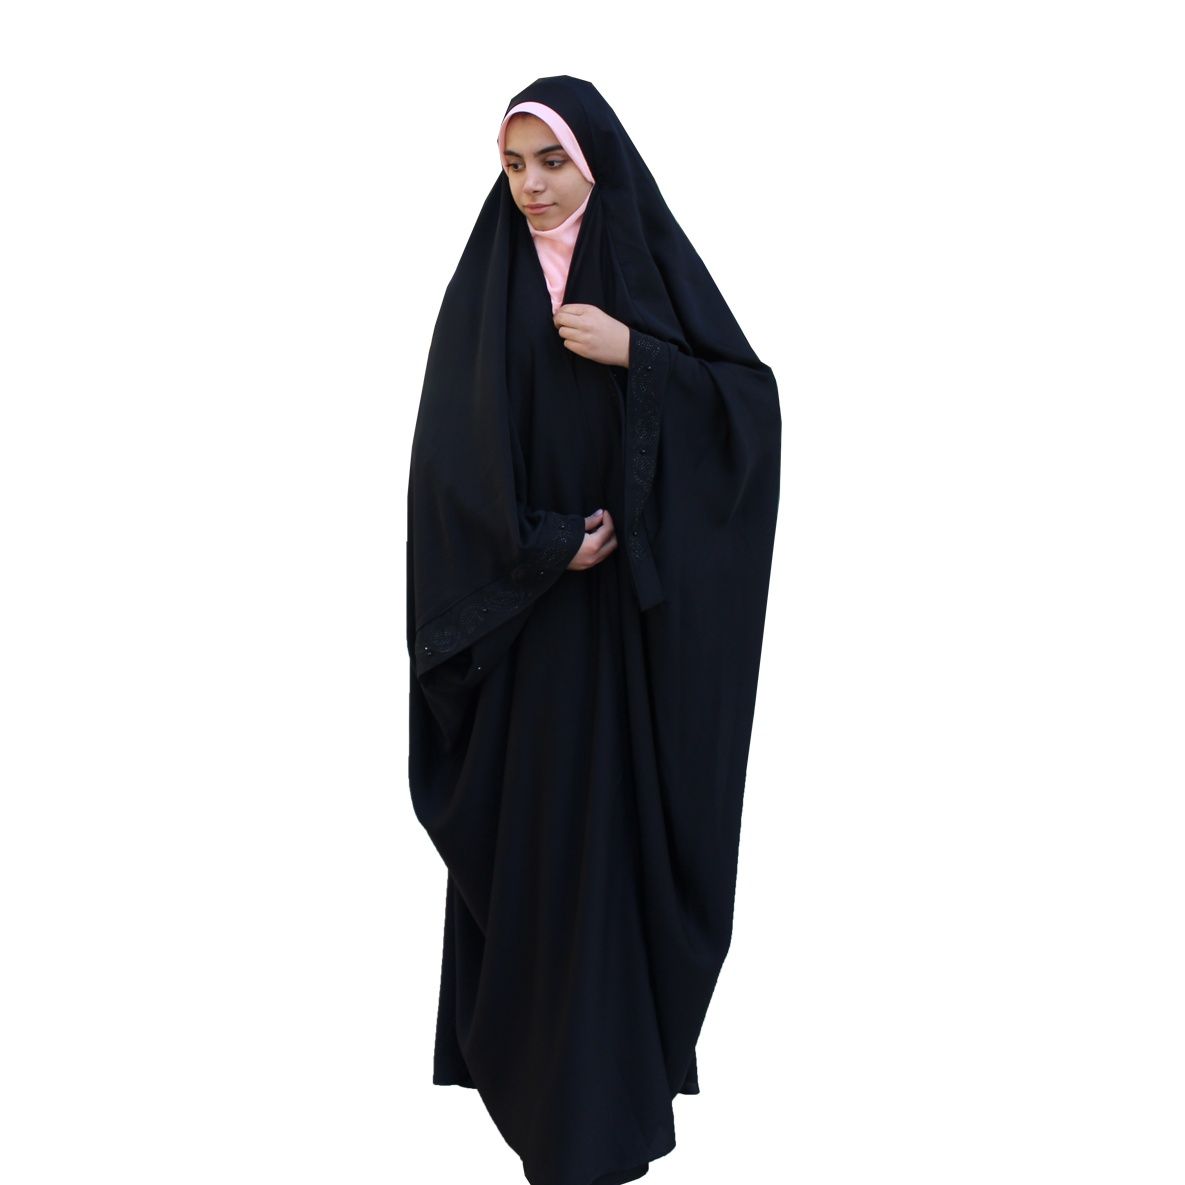 چادر عبایی حجاب مدل حریر السود پرنسسی حدیث کد 145 -  - 1